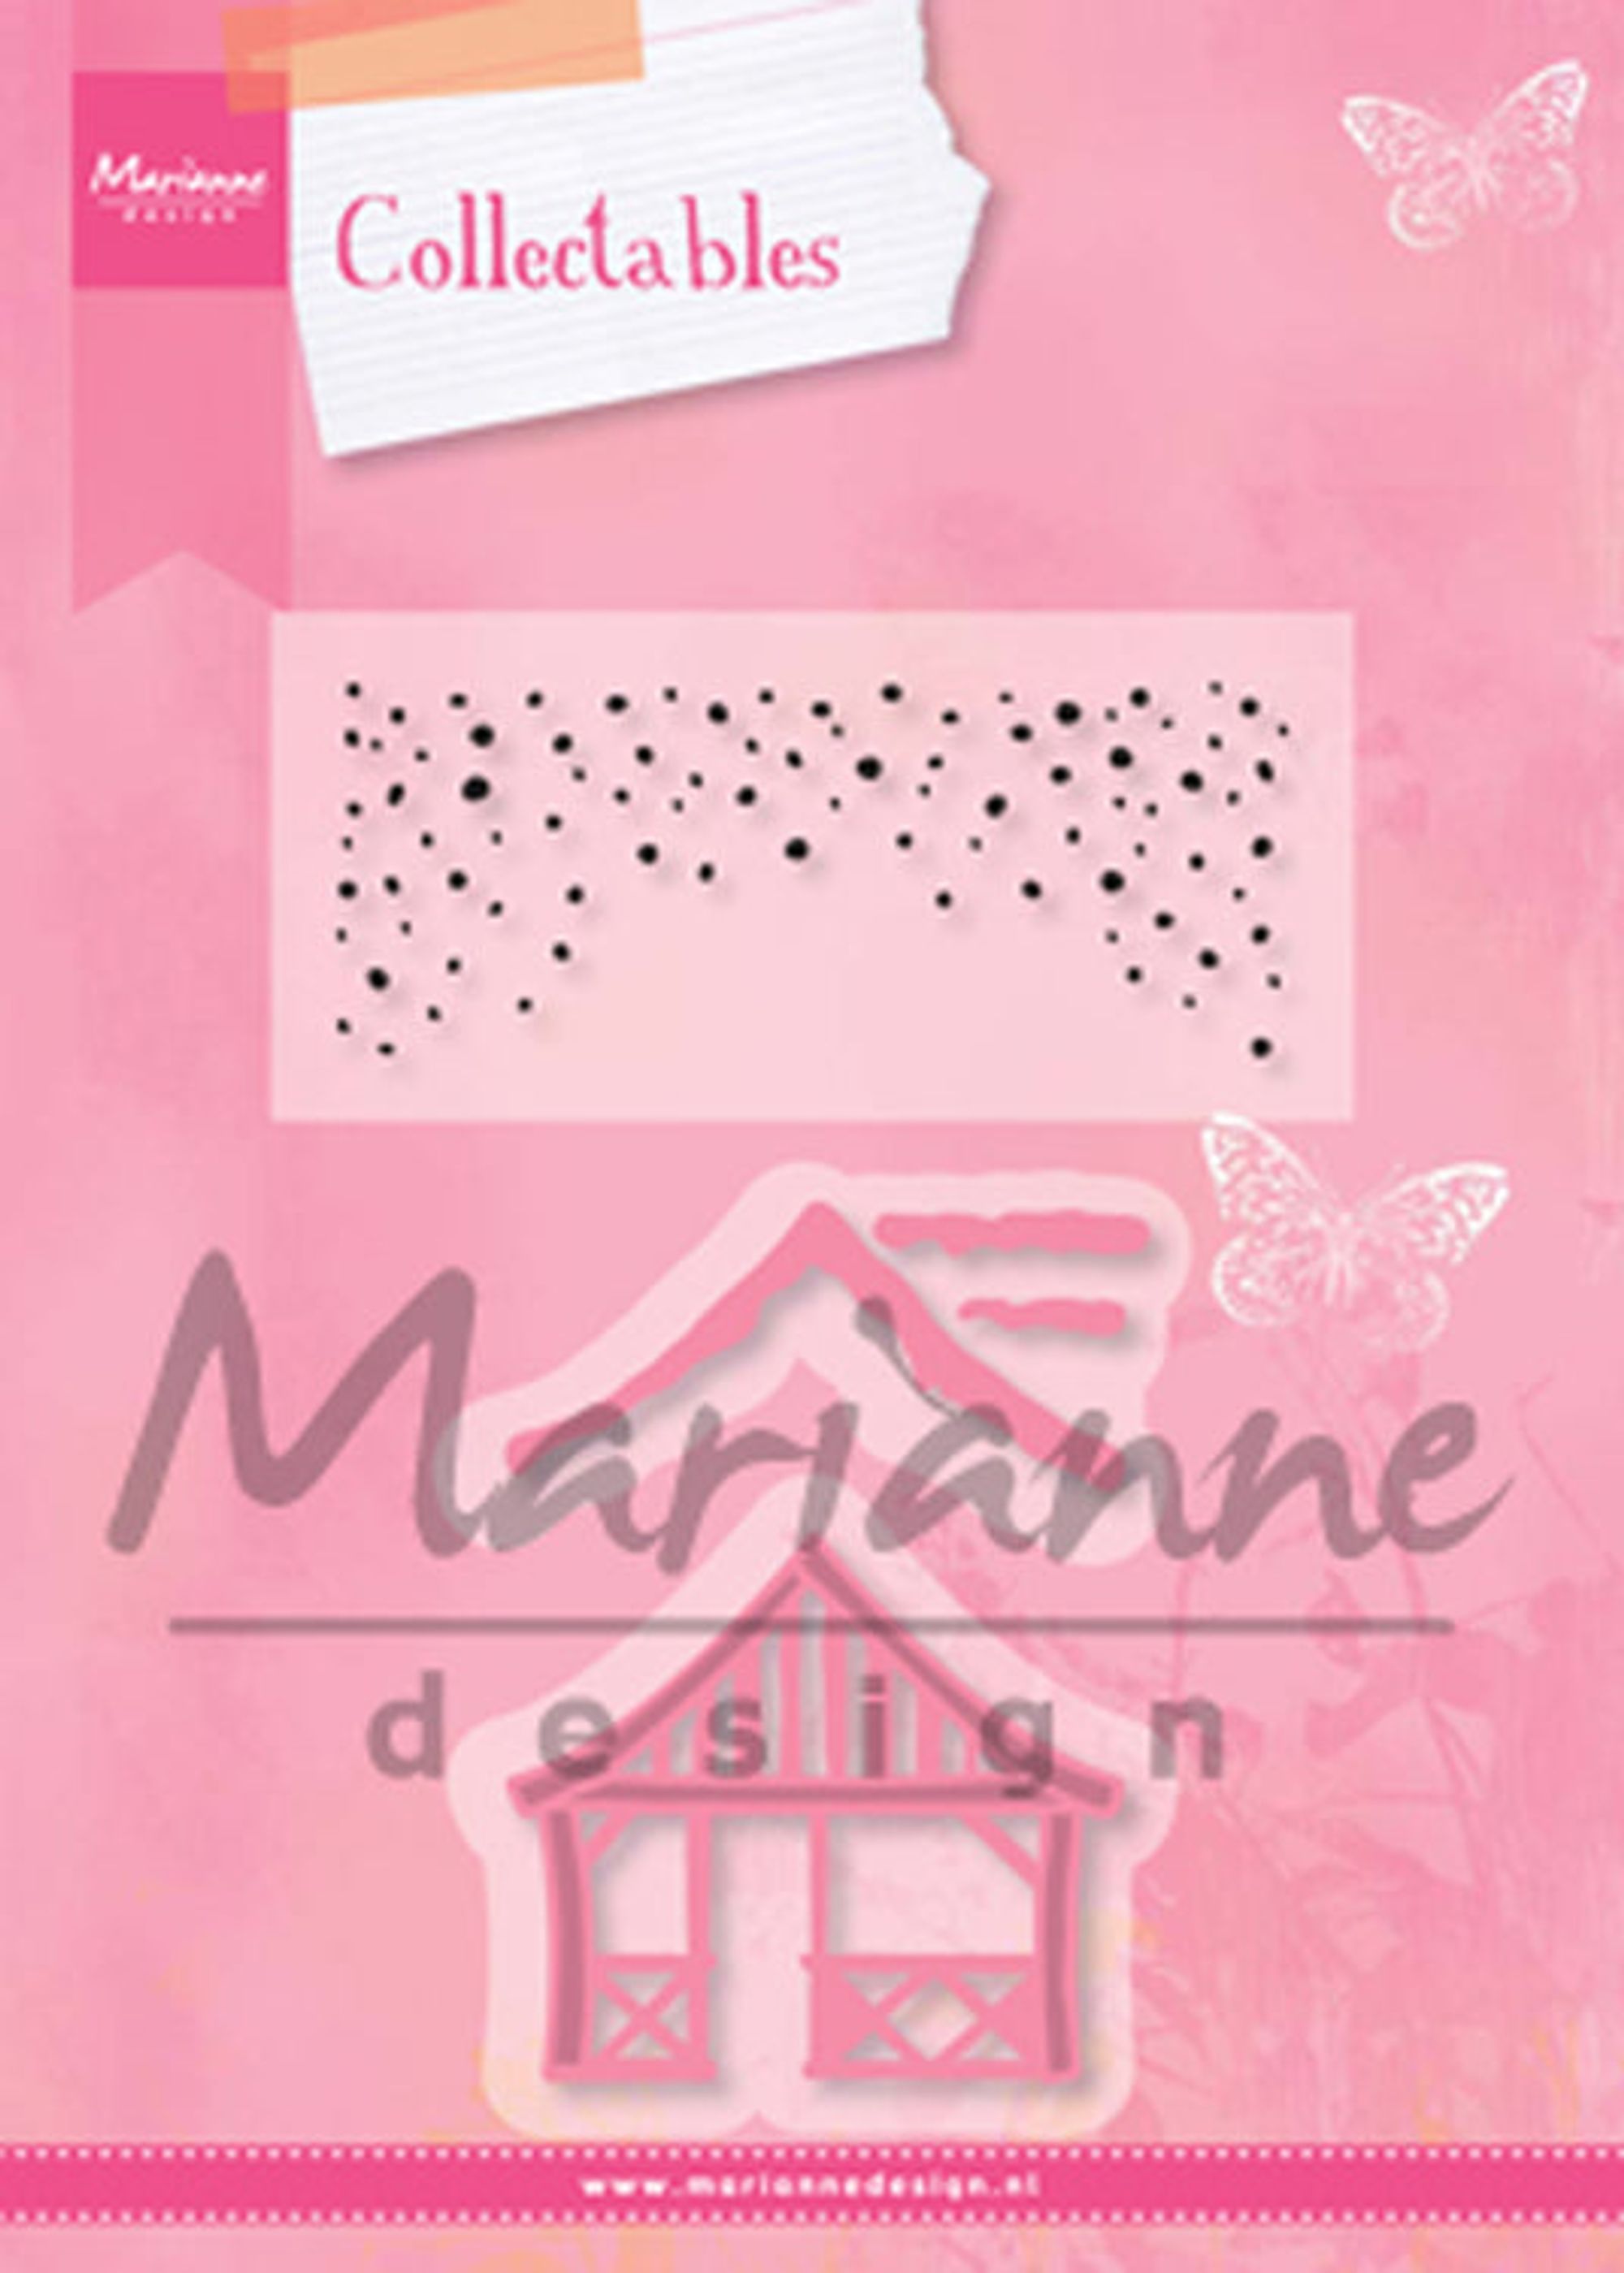 Marianne Design: Collectables Dies & Stamp Set - Xmas Village Chalet